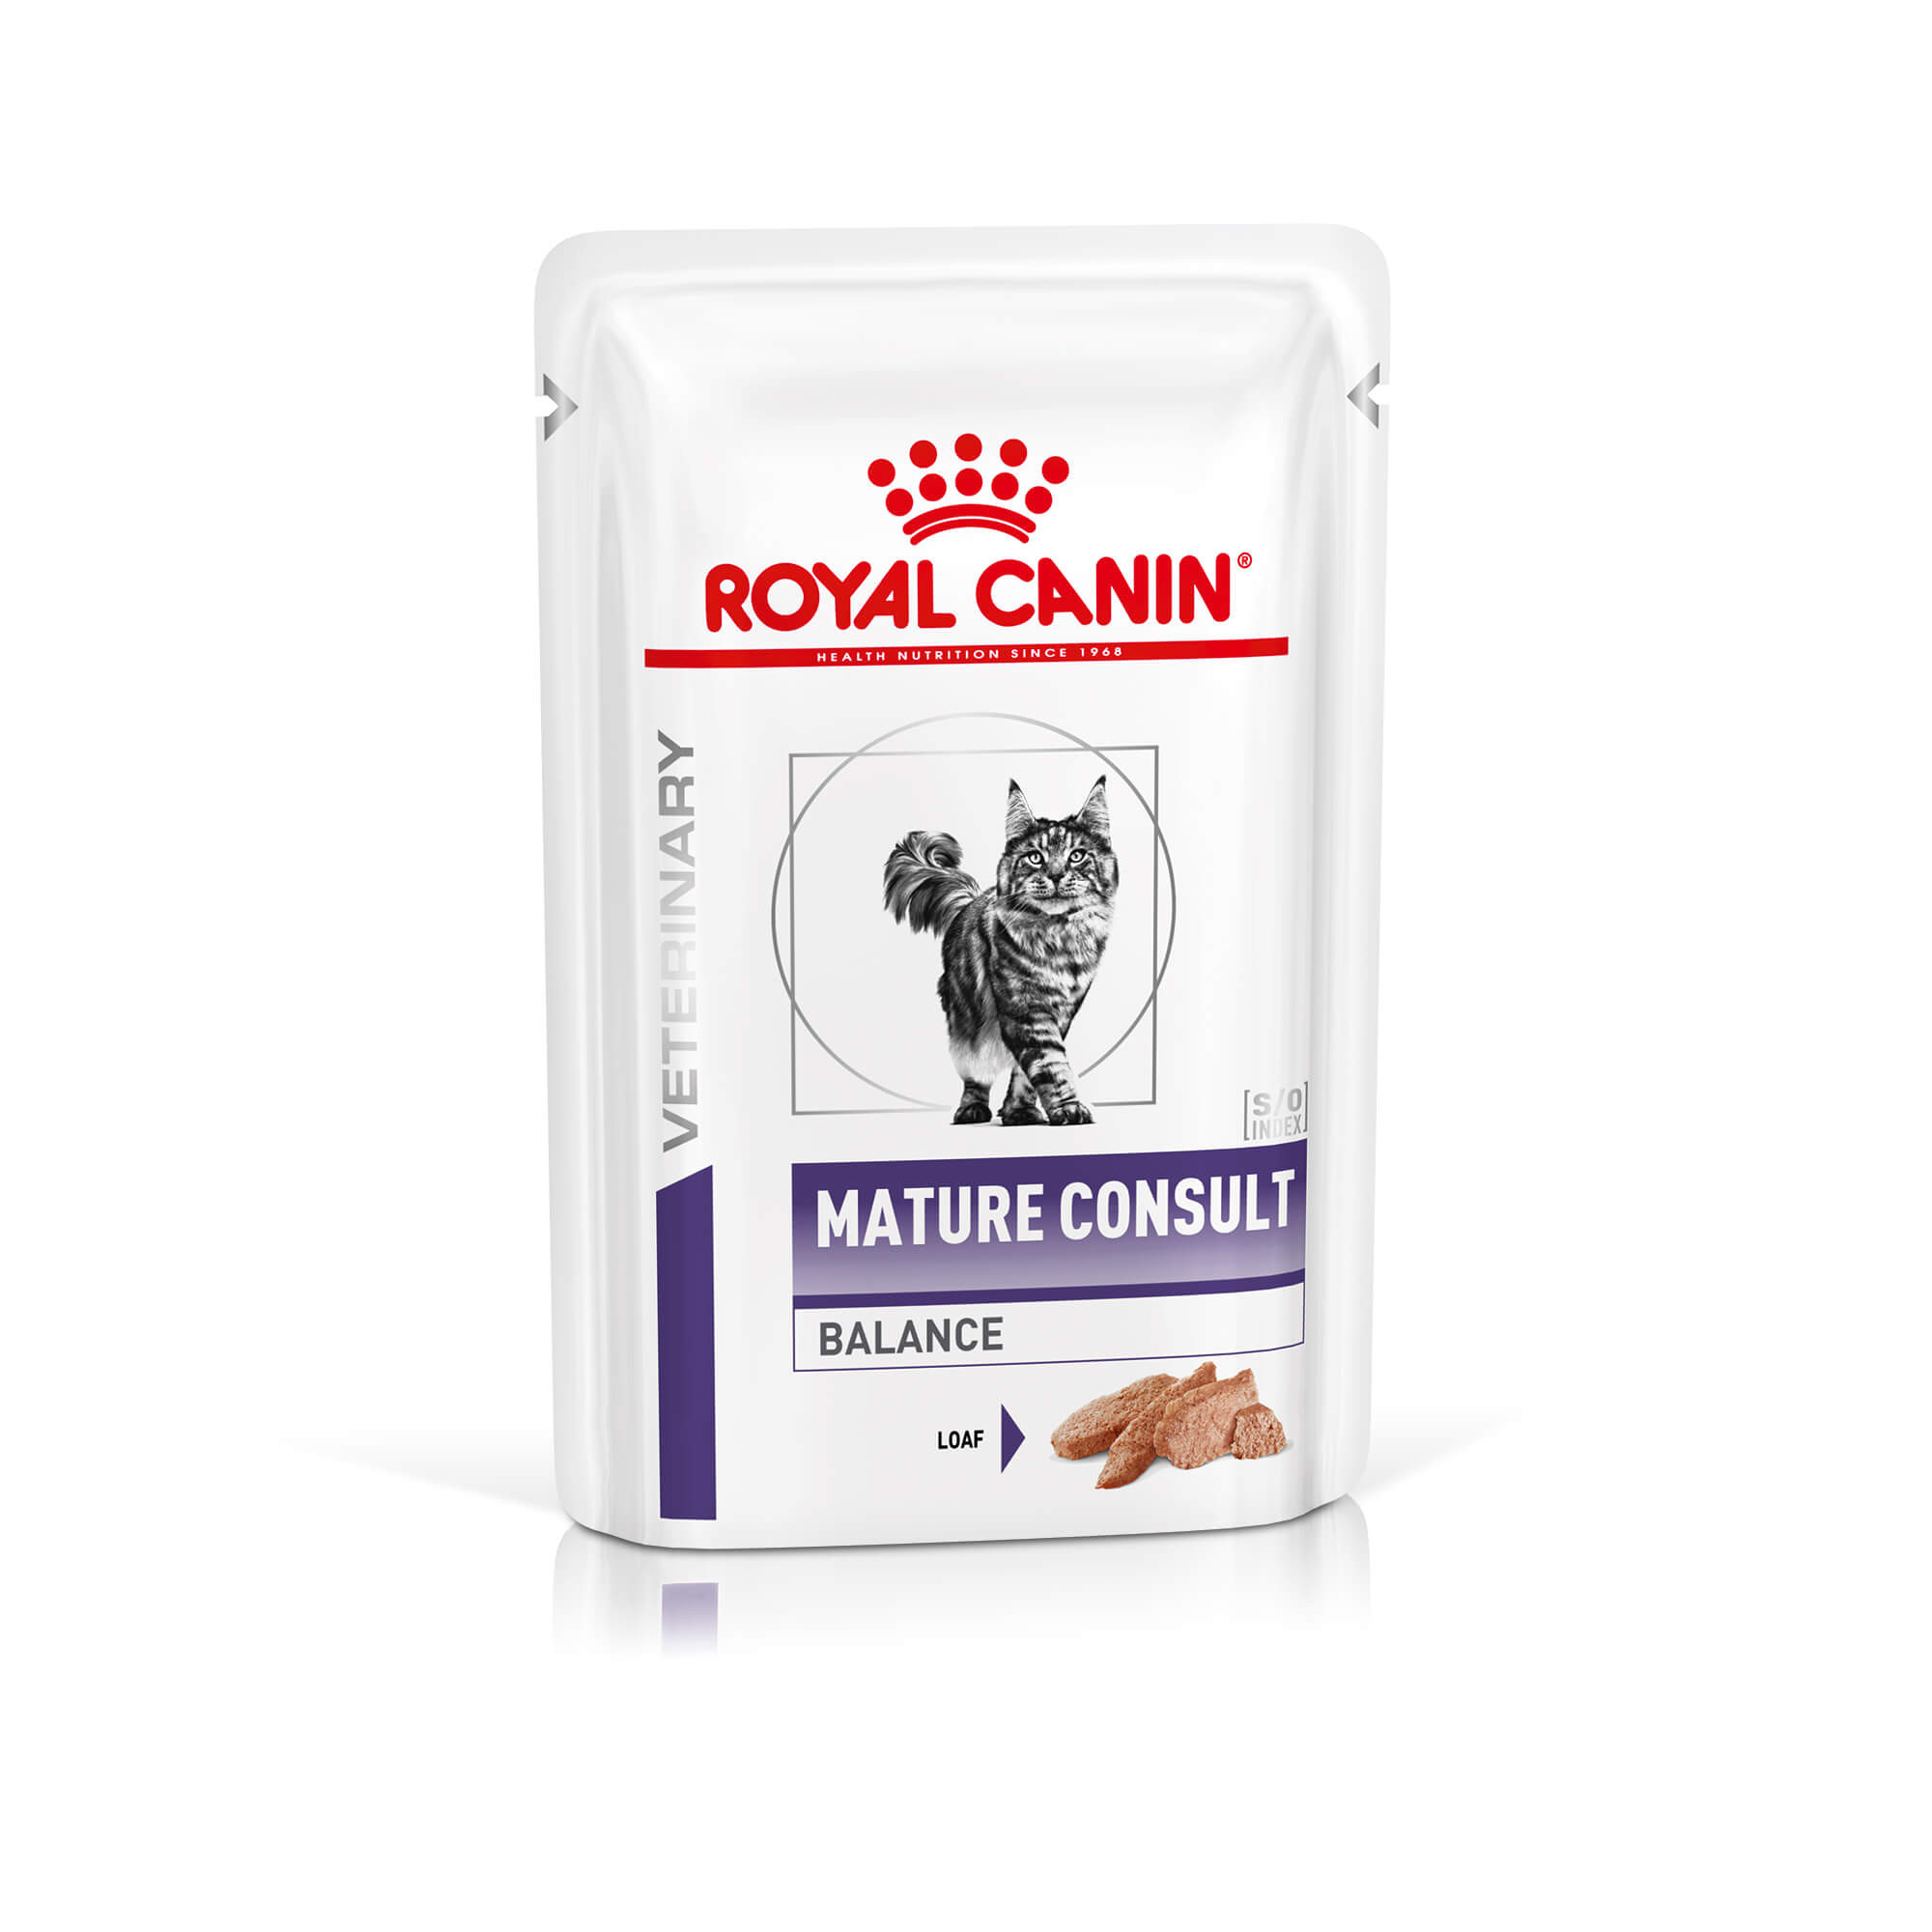 Royal Canin Expert Mature Consult Balance pâtée pour chat